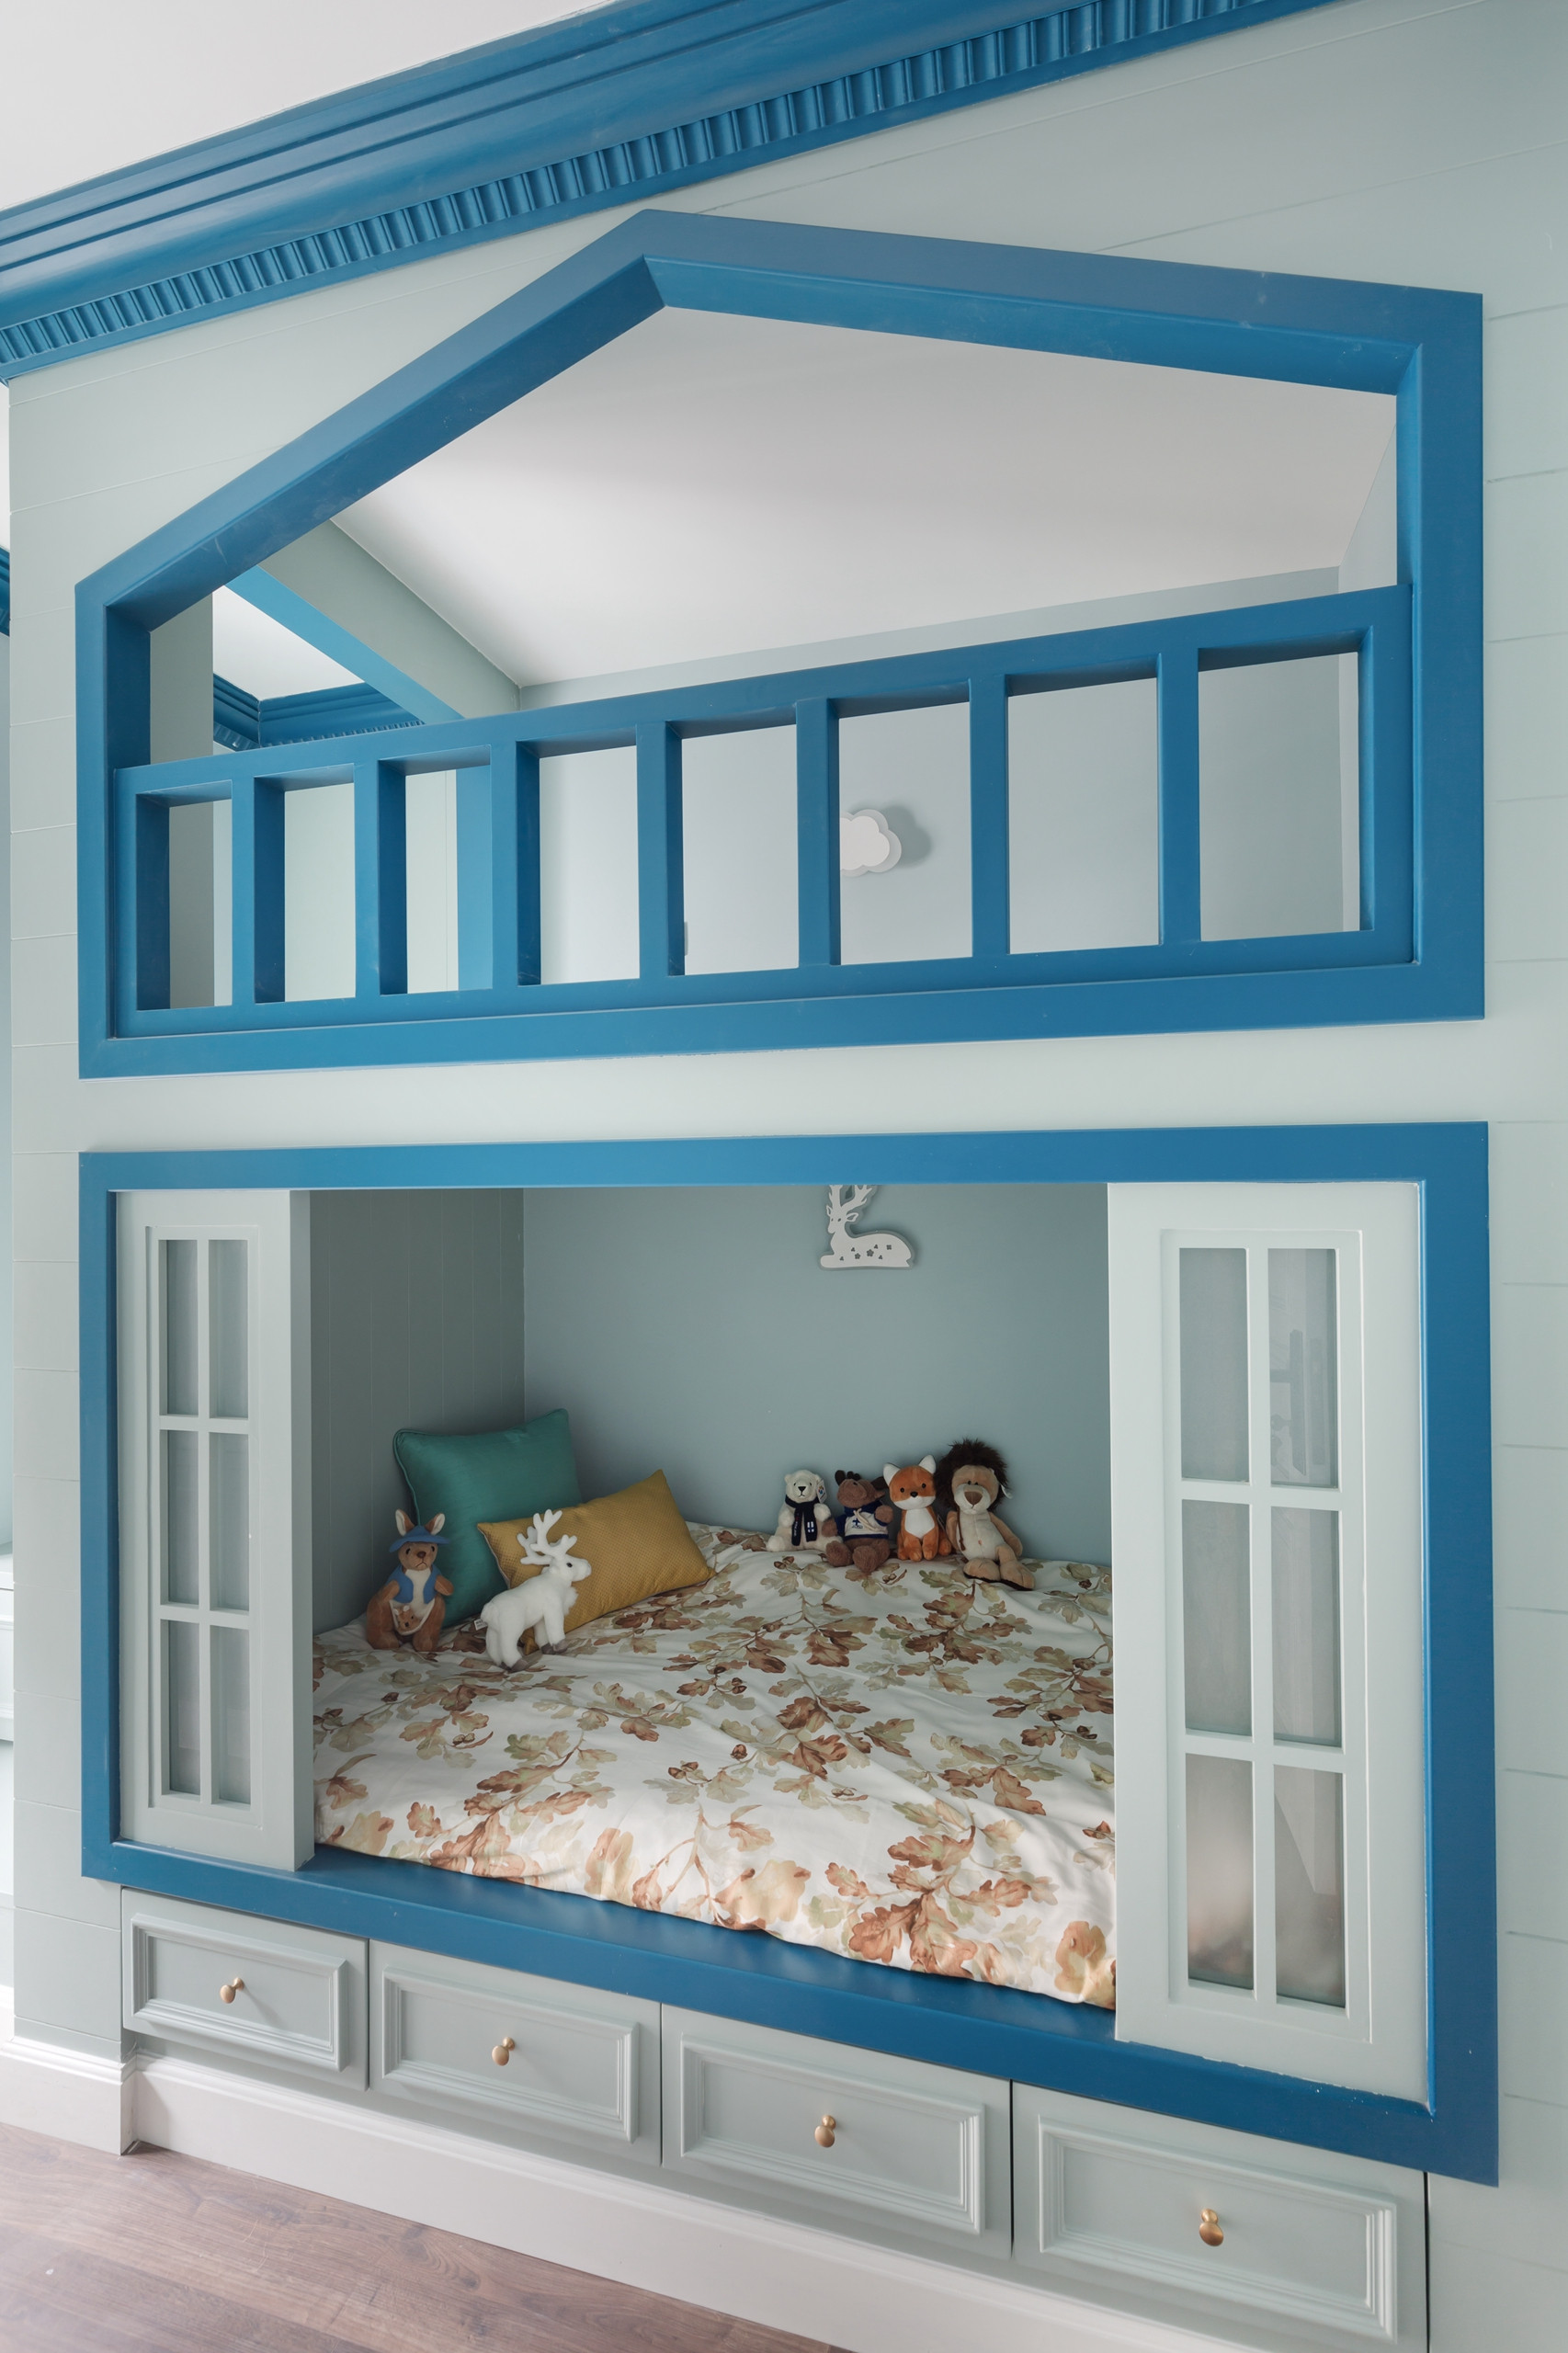 床图片 120平简约三居装修儿童床图片 飘窗 混搭风三居装修儿童床设计